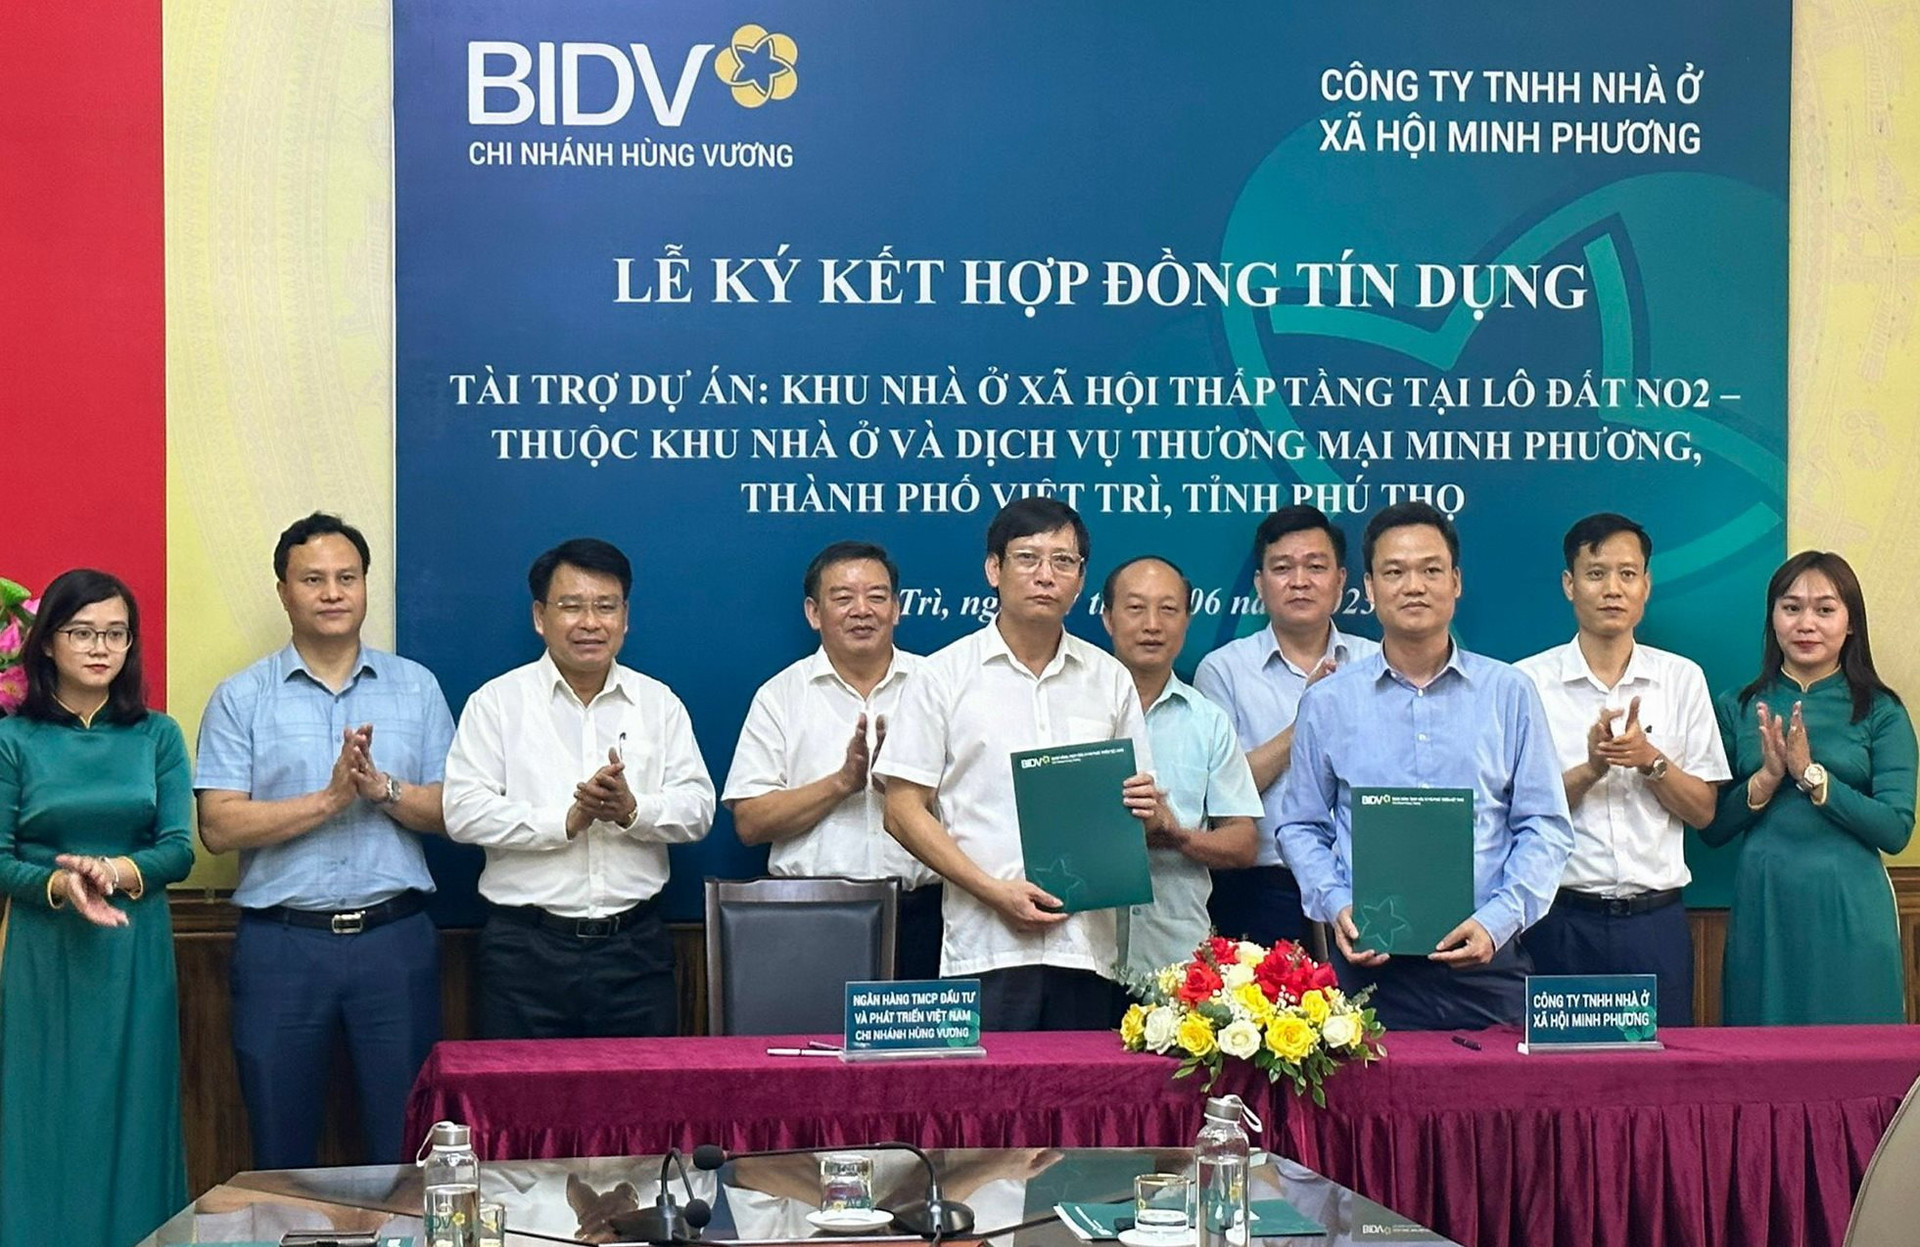 BIDV: Ngân hàng đầu tiên tài trợ tín dụng dự án nhà ở xã hội theo Chương trình 120 nghìn tỷ đồng